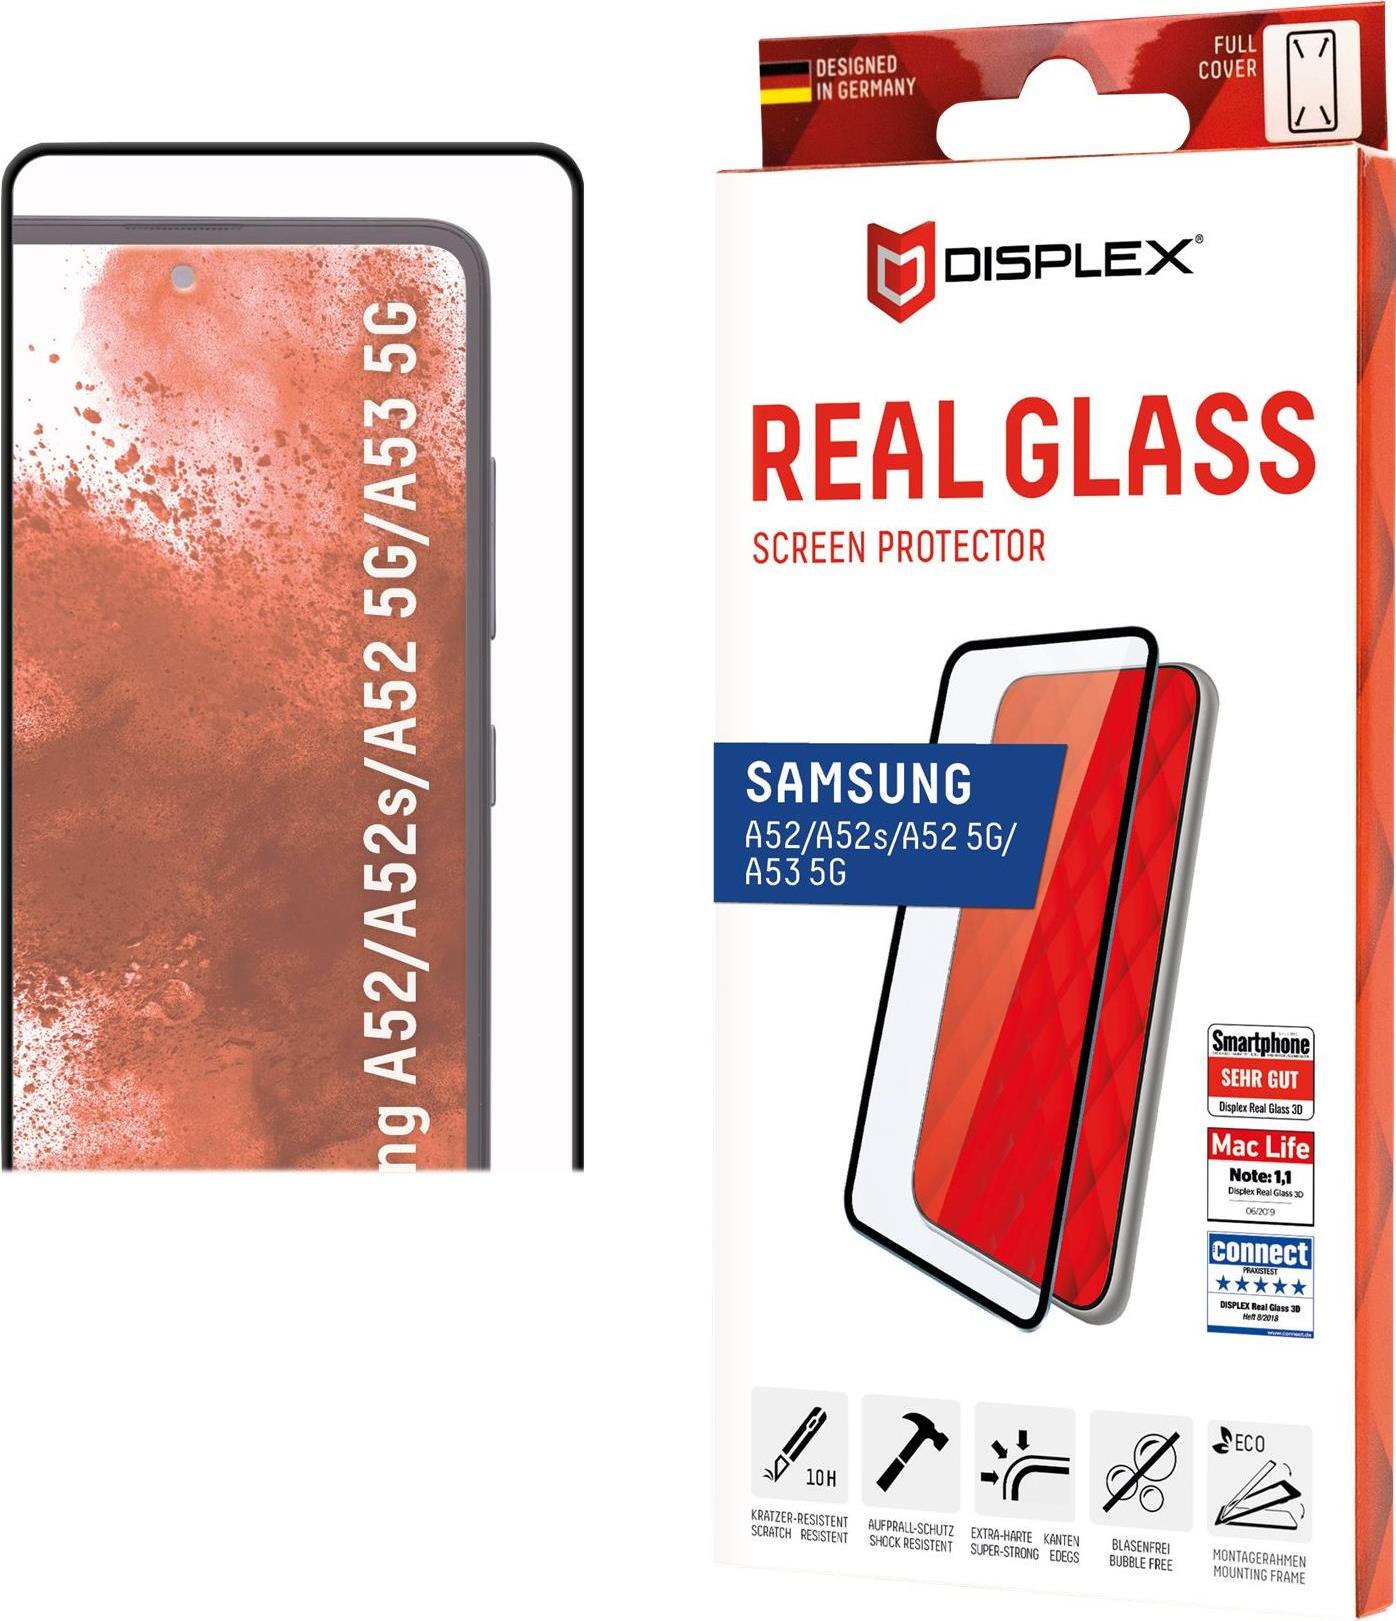 Displex Panzerglas (10H) für Samsung Galaxy A52/A52 5G/A52s 5G – Montagerahmen – Full Cover – Samsung – Galaxy A52/A52 5G/A52s 5G – Schlagfest – Kratzresistent – Staubresistent – Transparent – 1 Stück(e) (01390)